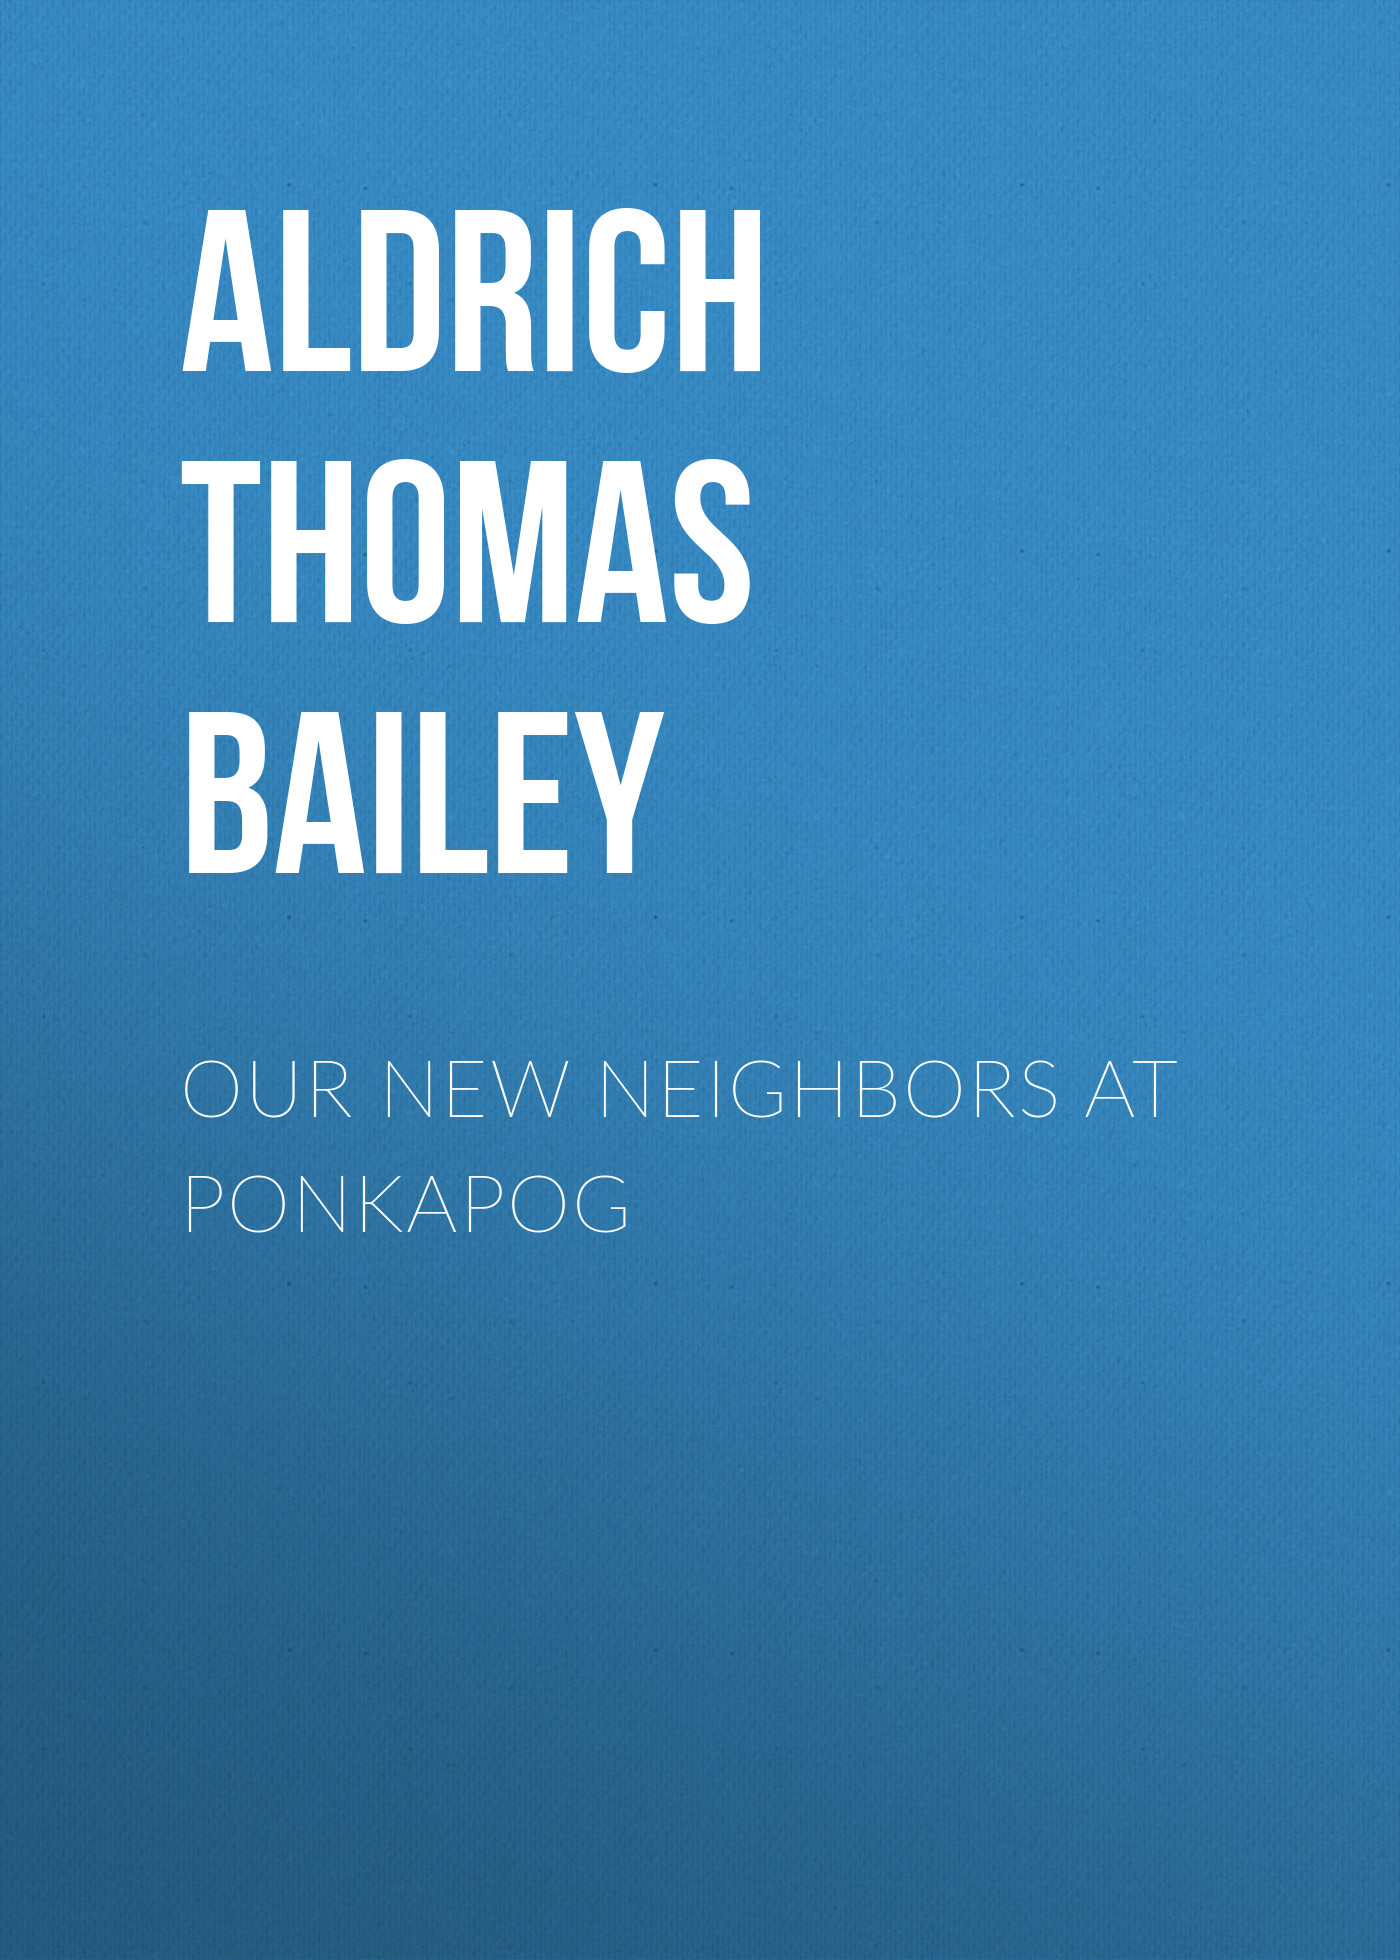 Книга Our New Neighbors At Ponkapog из серии , созданная Thomas Aldrich, может относится к жанру Зарубежная классика, Литература 19 века, Зарубежная старинная литература. Стоимость электронной книги Our New Neighbors At Ponkapog с идентификатором 36367326 составляет 0 руб.